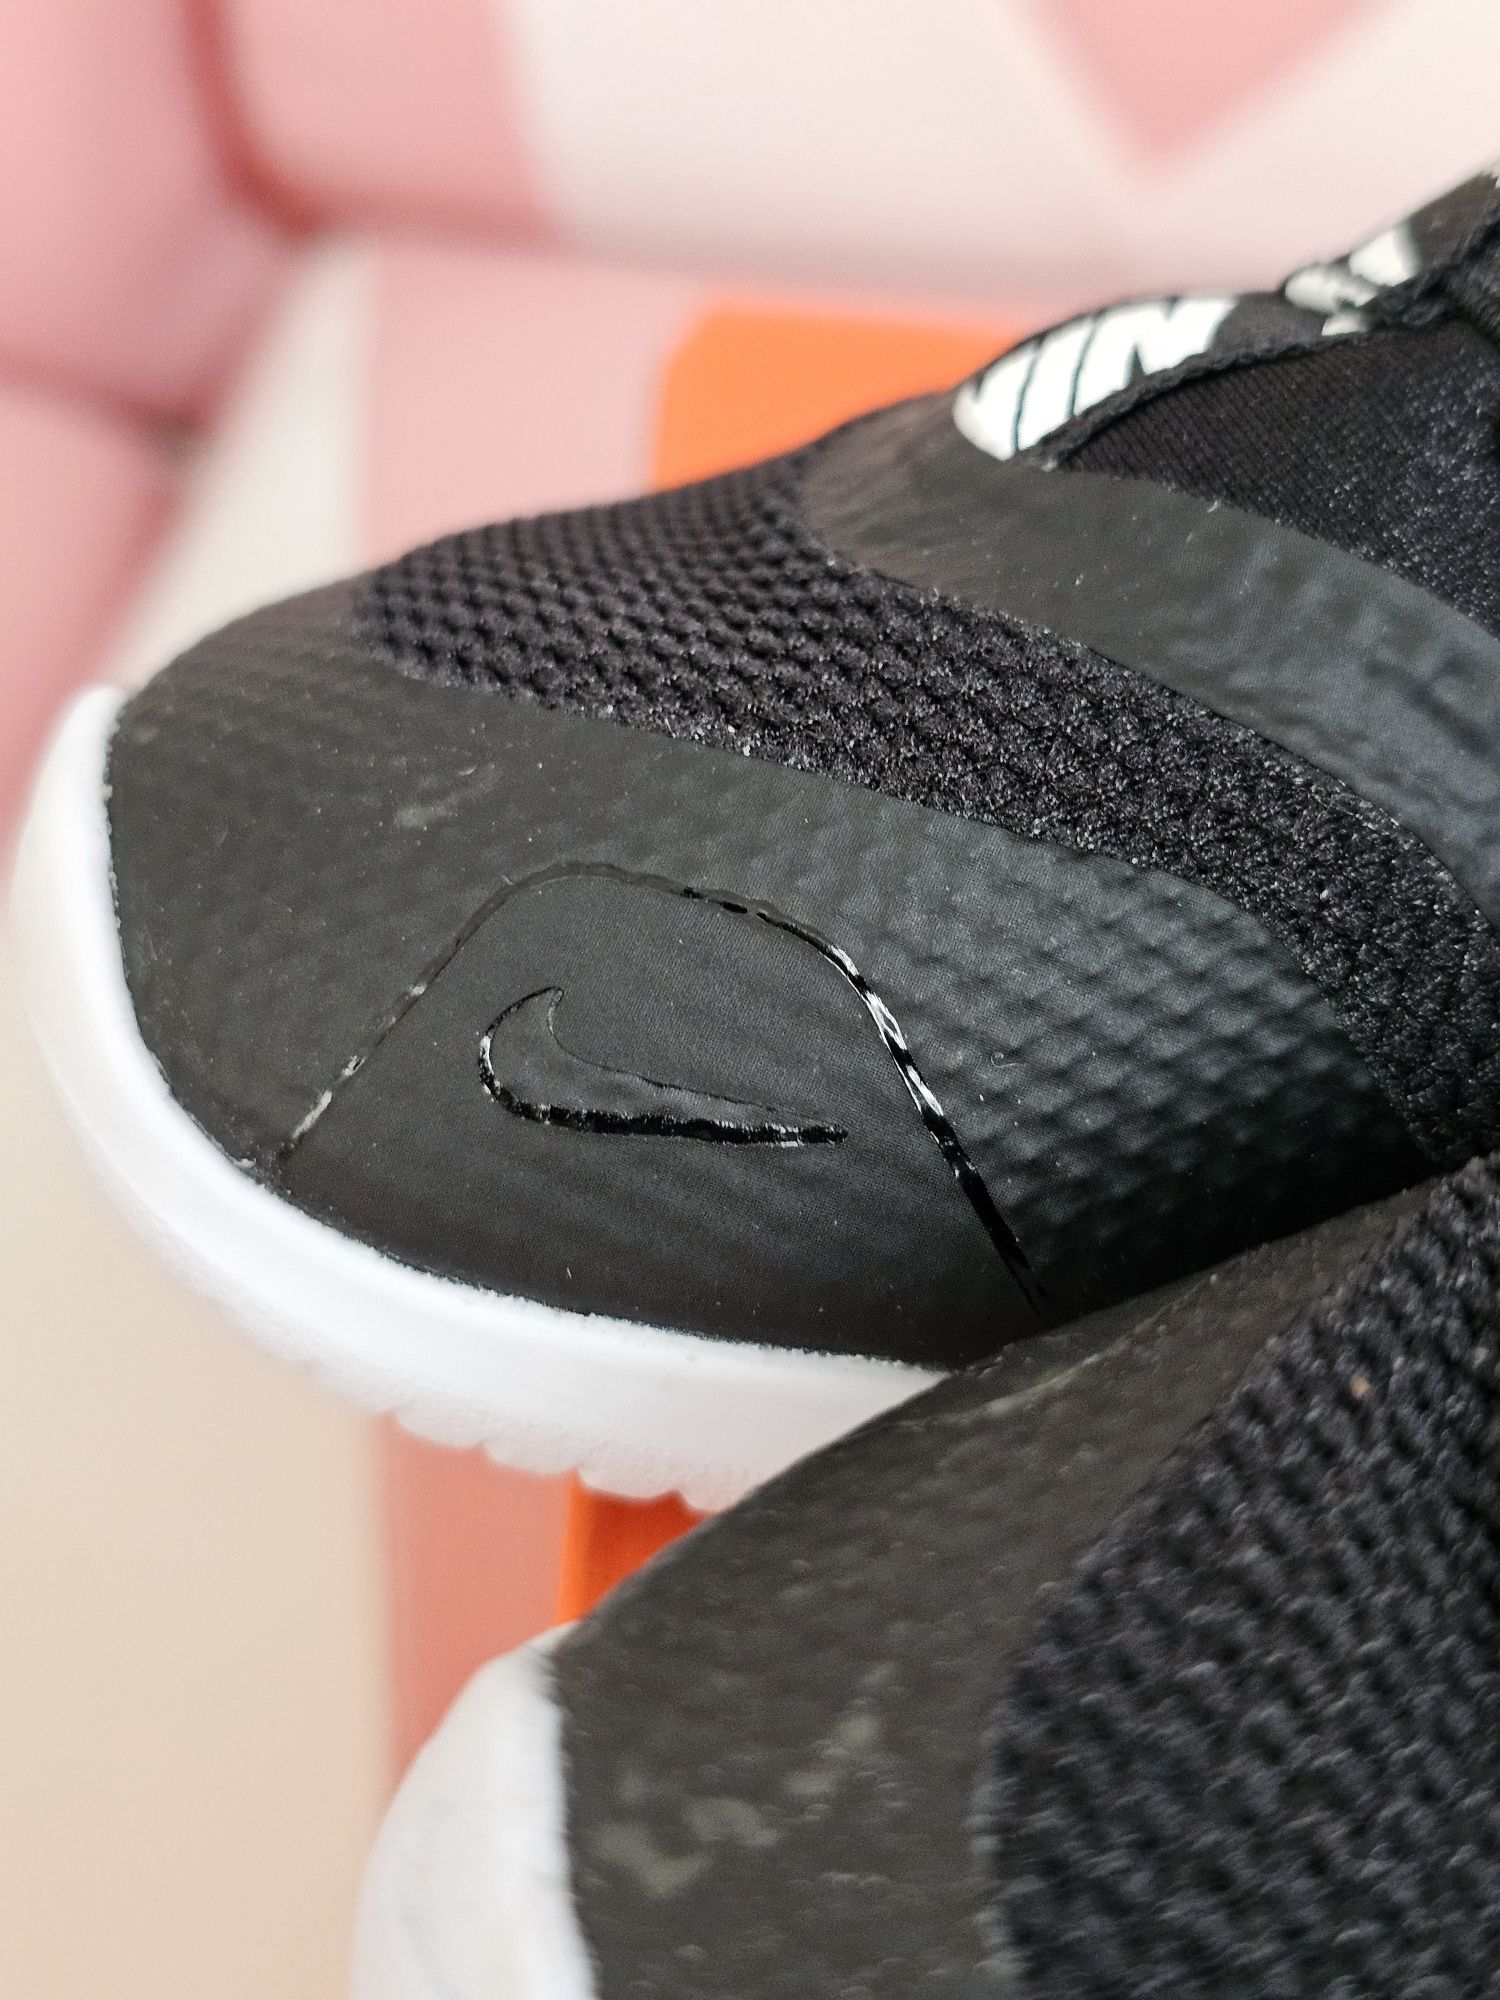 Buty nowe Nike dla dziecka eu25 wkładka 14cm